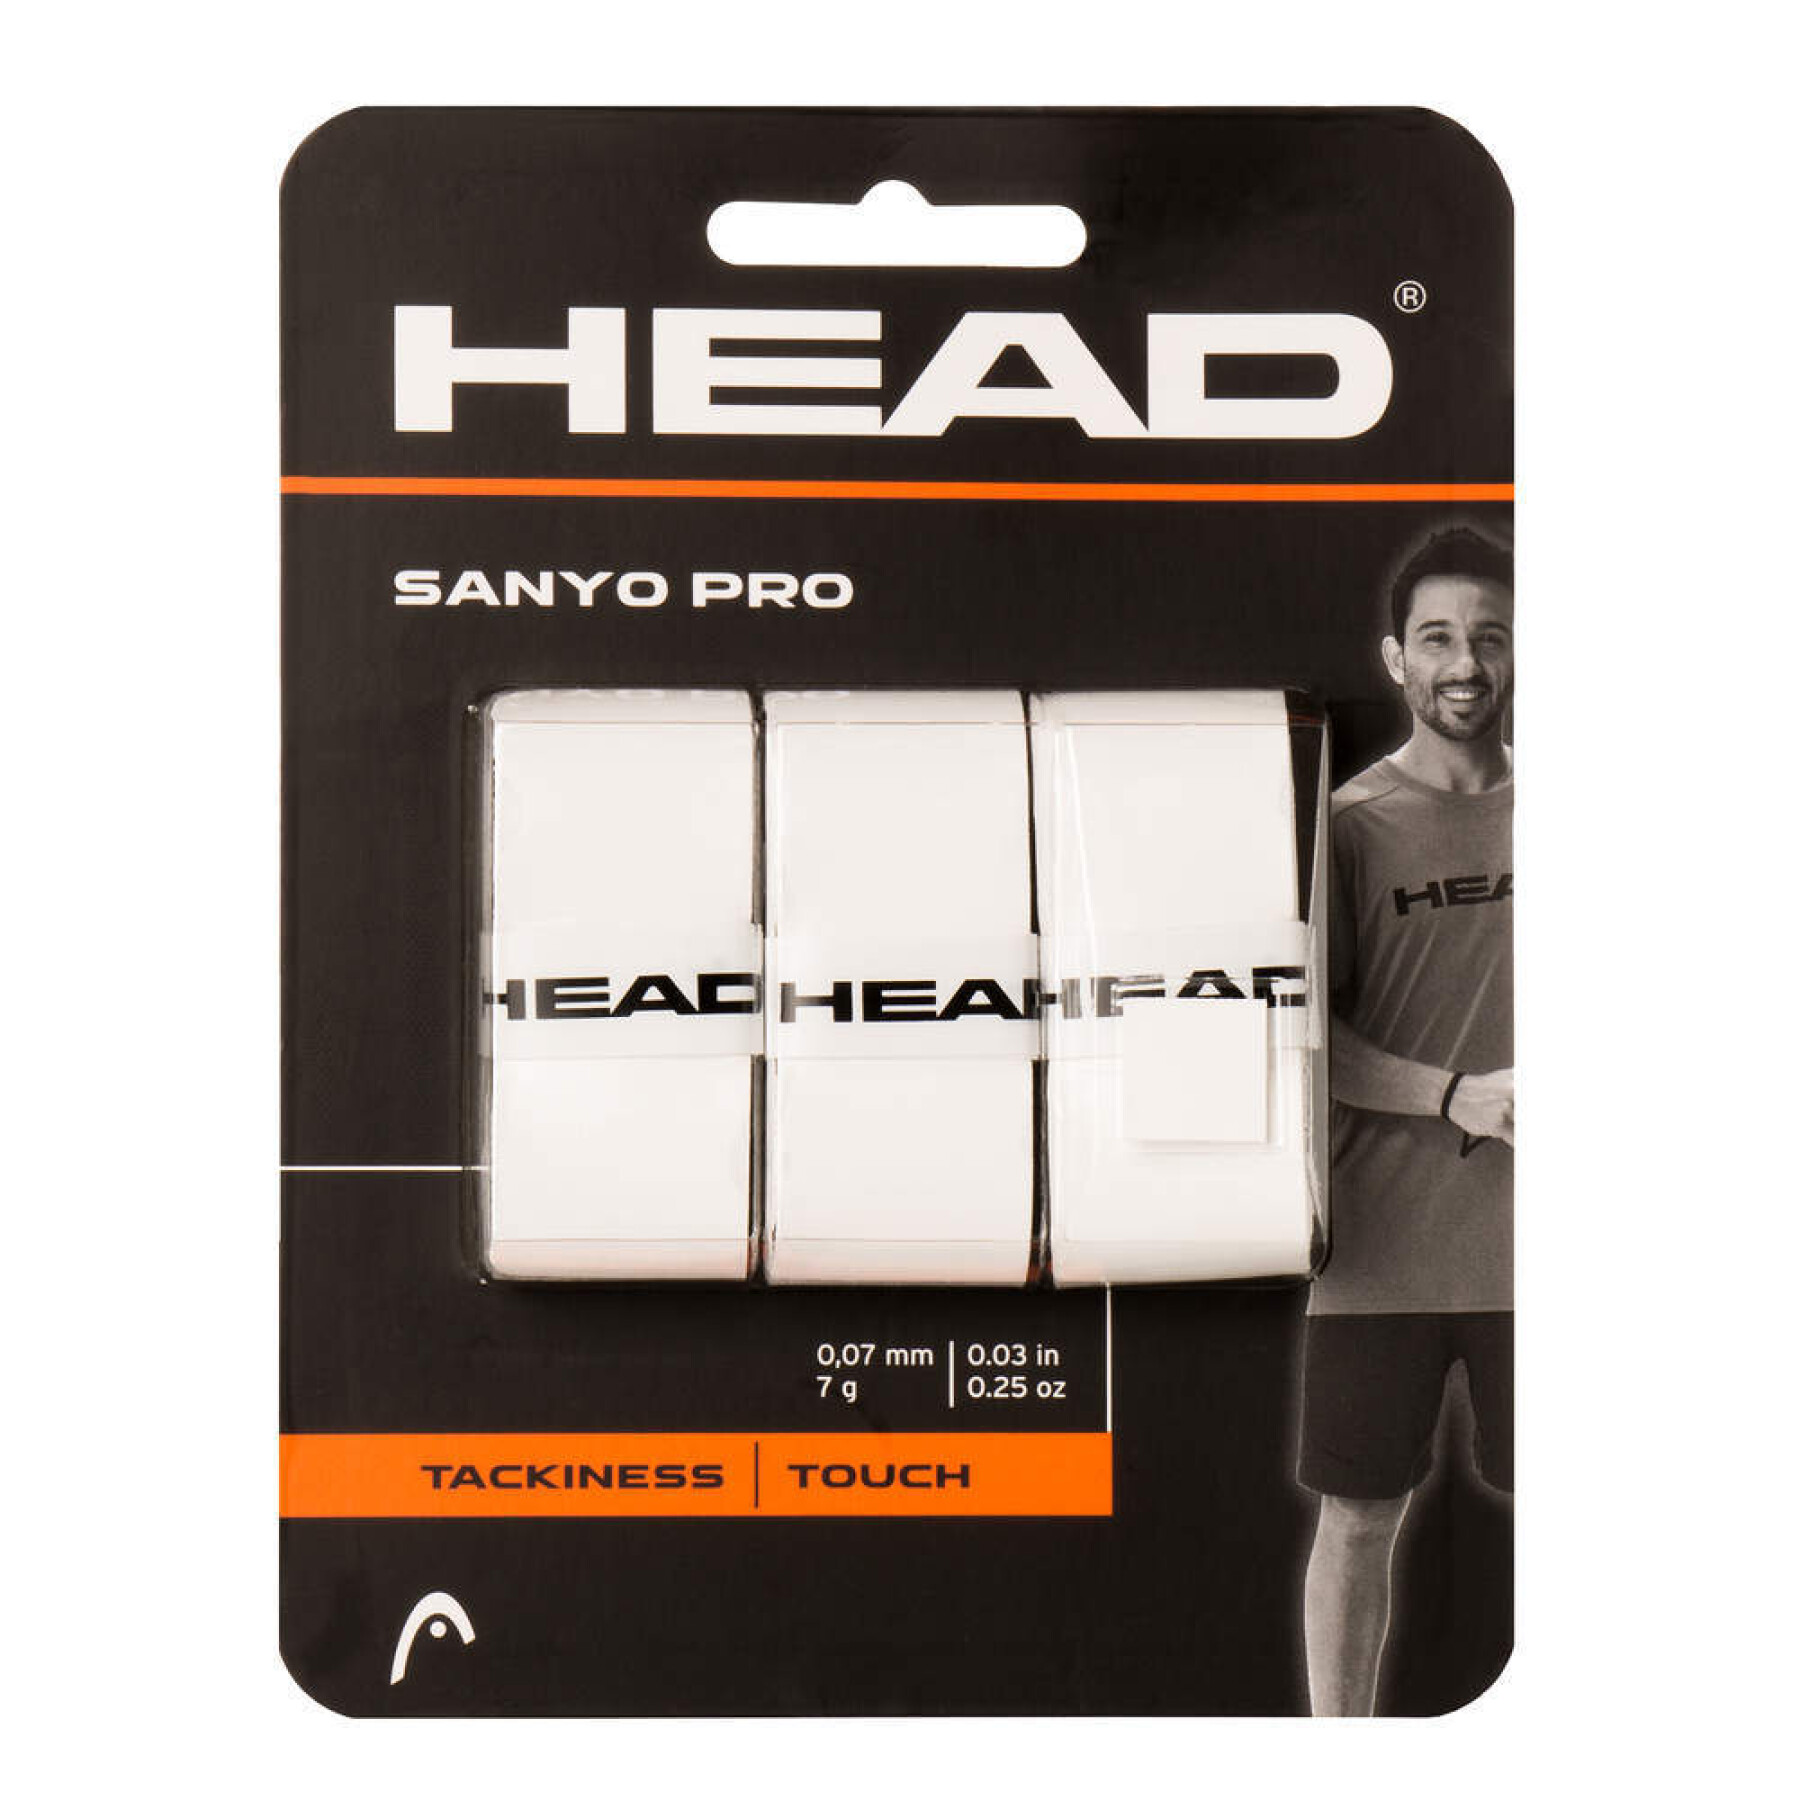 Sobregrip de tenis Head Sanyo Pro